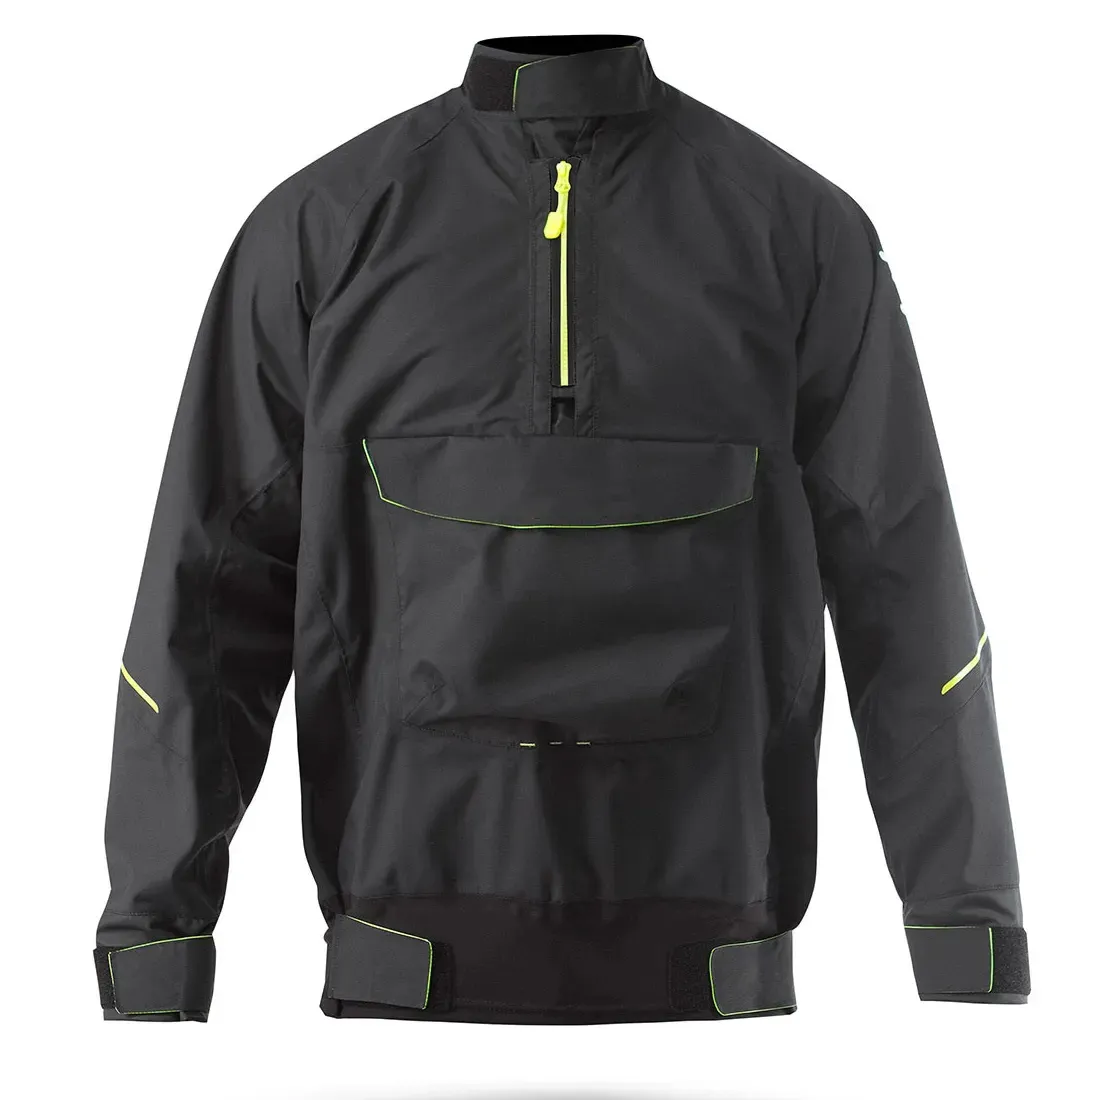 Oem Service giacca da uomo traspirante impermeabile giacca da pesca personalizzata campeggio giacca Bomber da esterno Design personalizzato